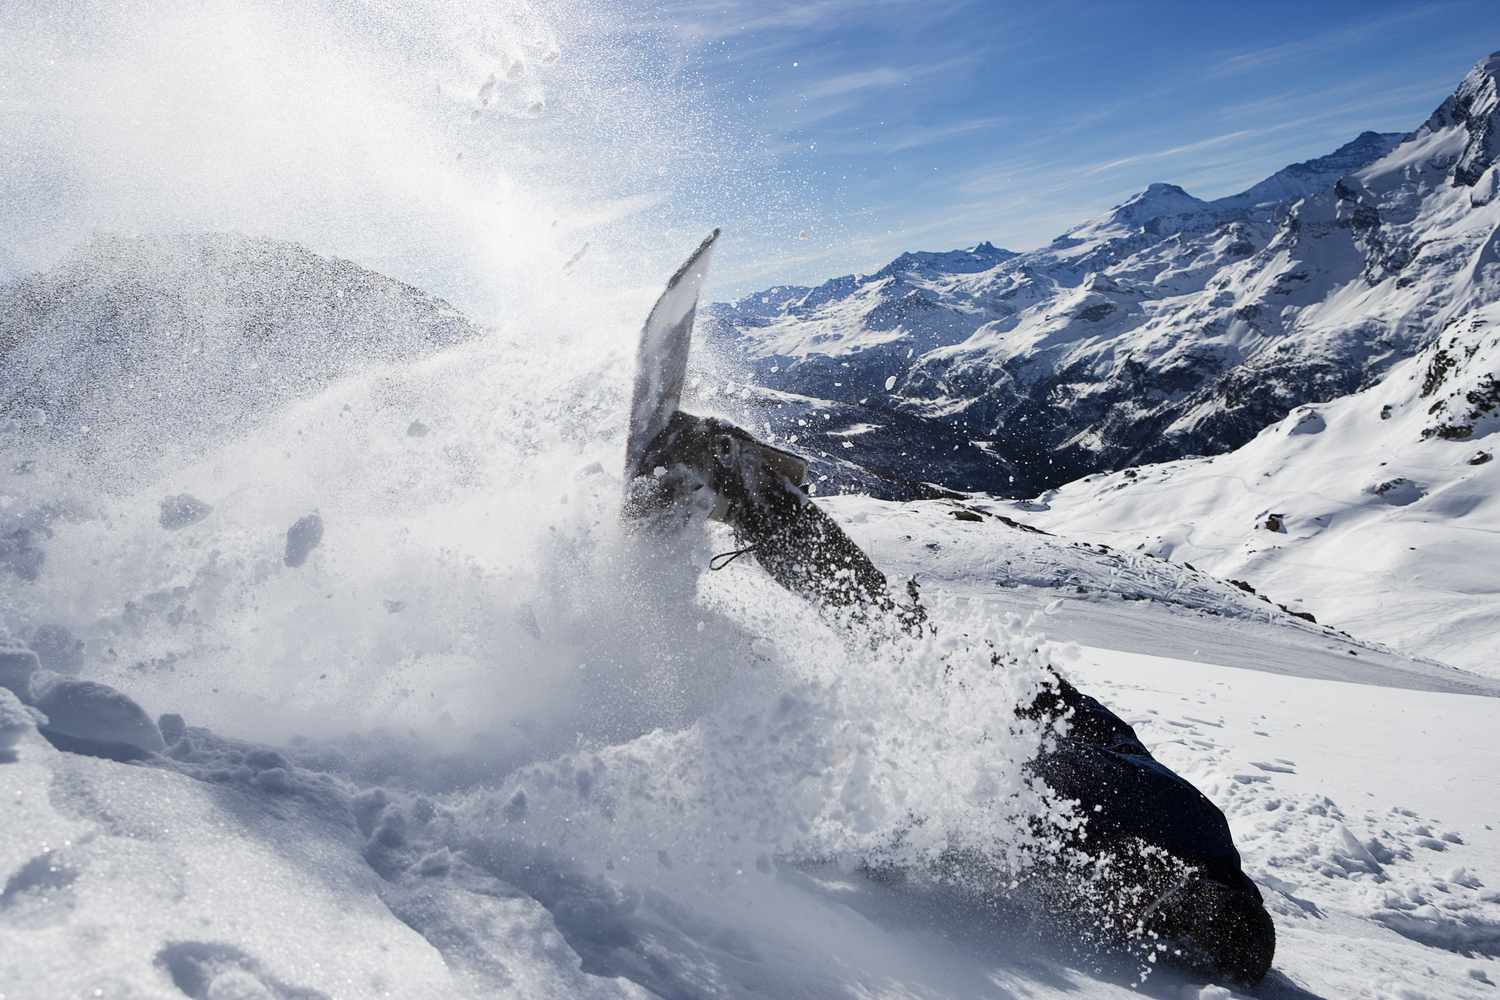 Mannelijke snowboarder die omvalt op berg